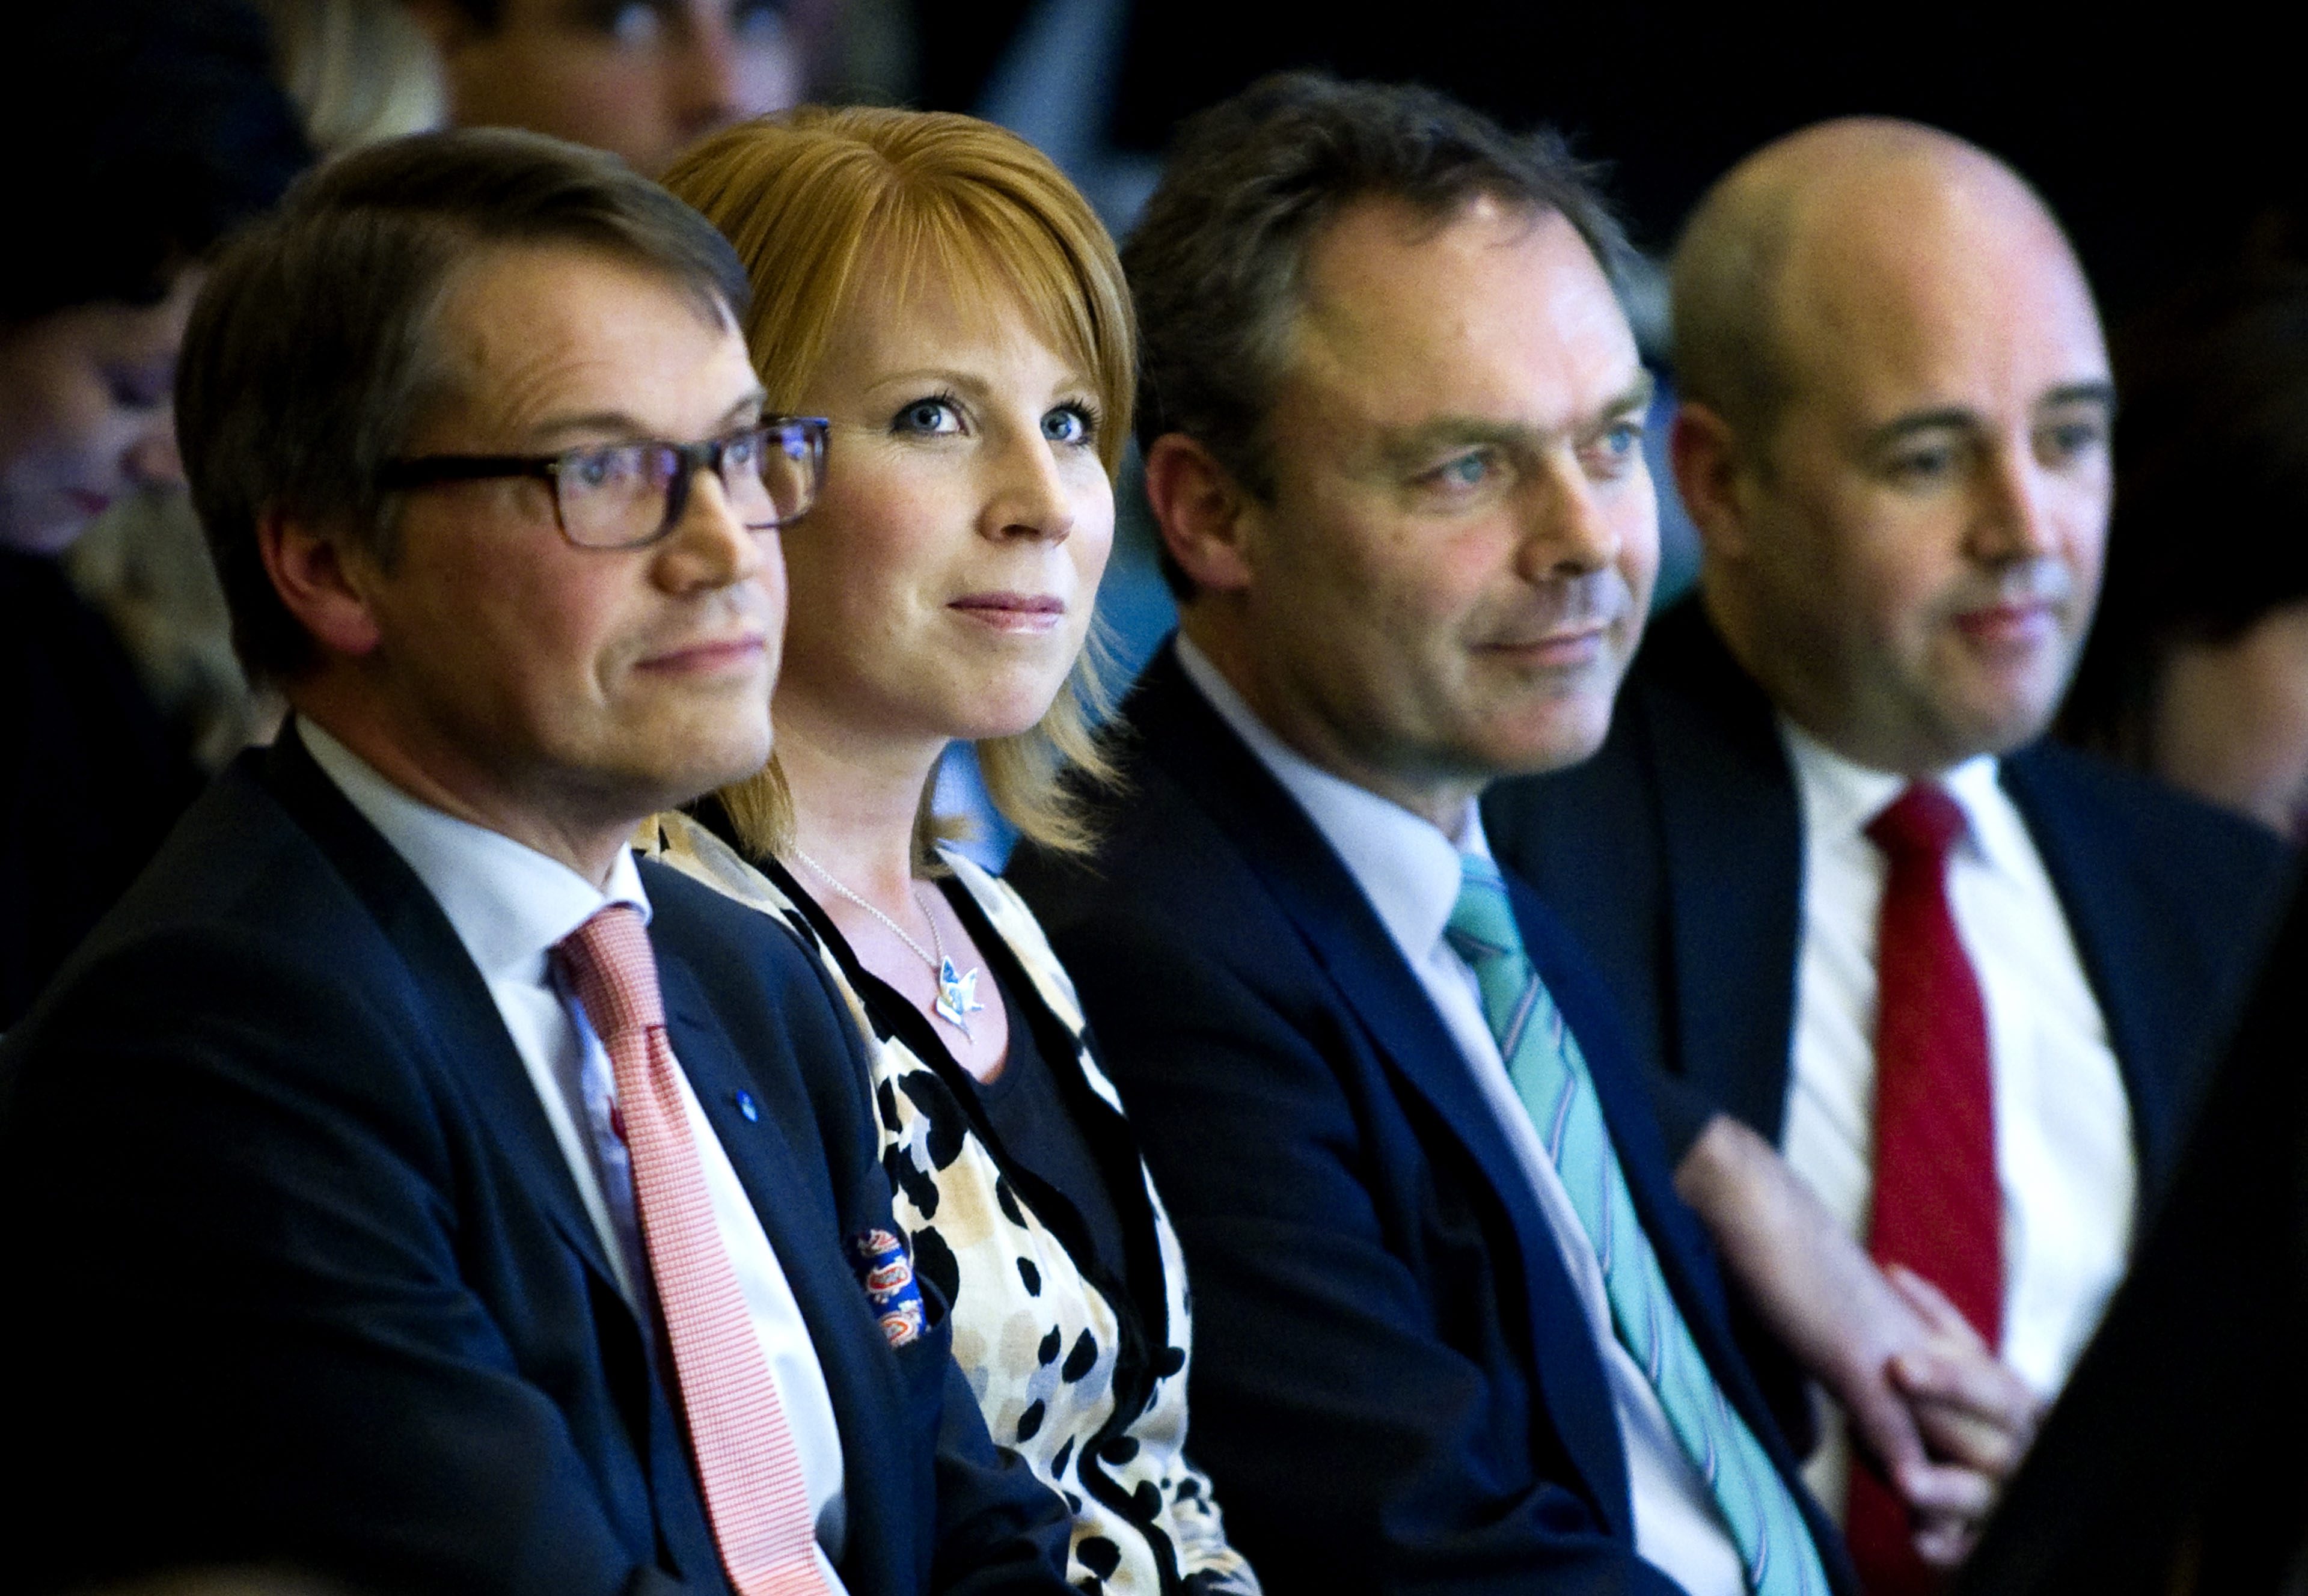 Tillsammans med Allianskollegorna
Göran Hägglund (KD), Jan Björklund (FP) och Fredrik Reinfeldt (M).